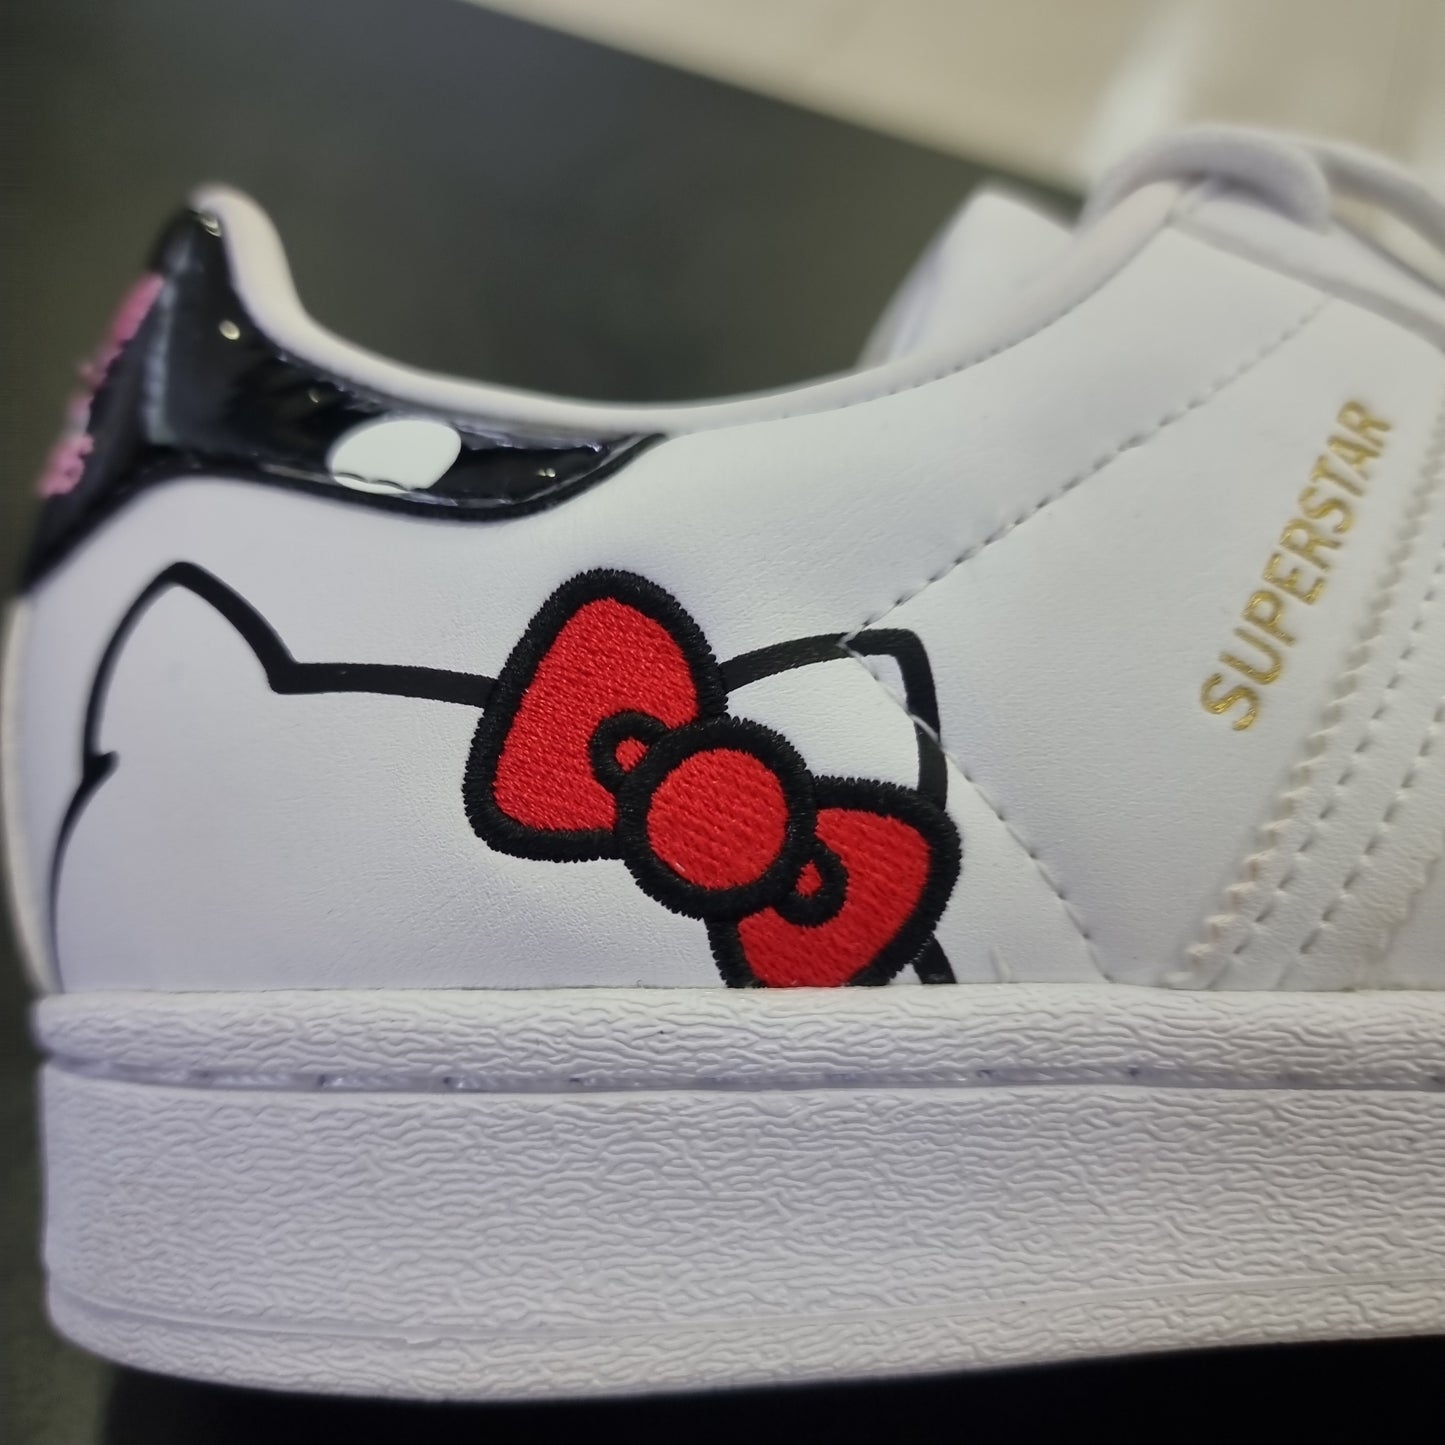 Adidas Superstar Hello Kitty